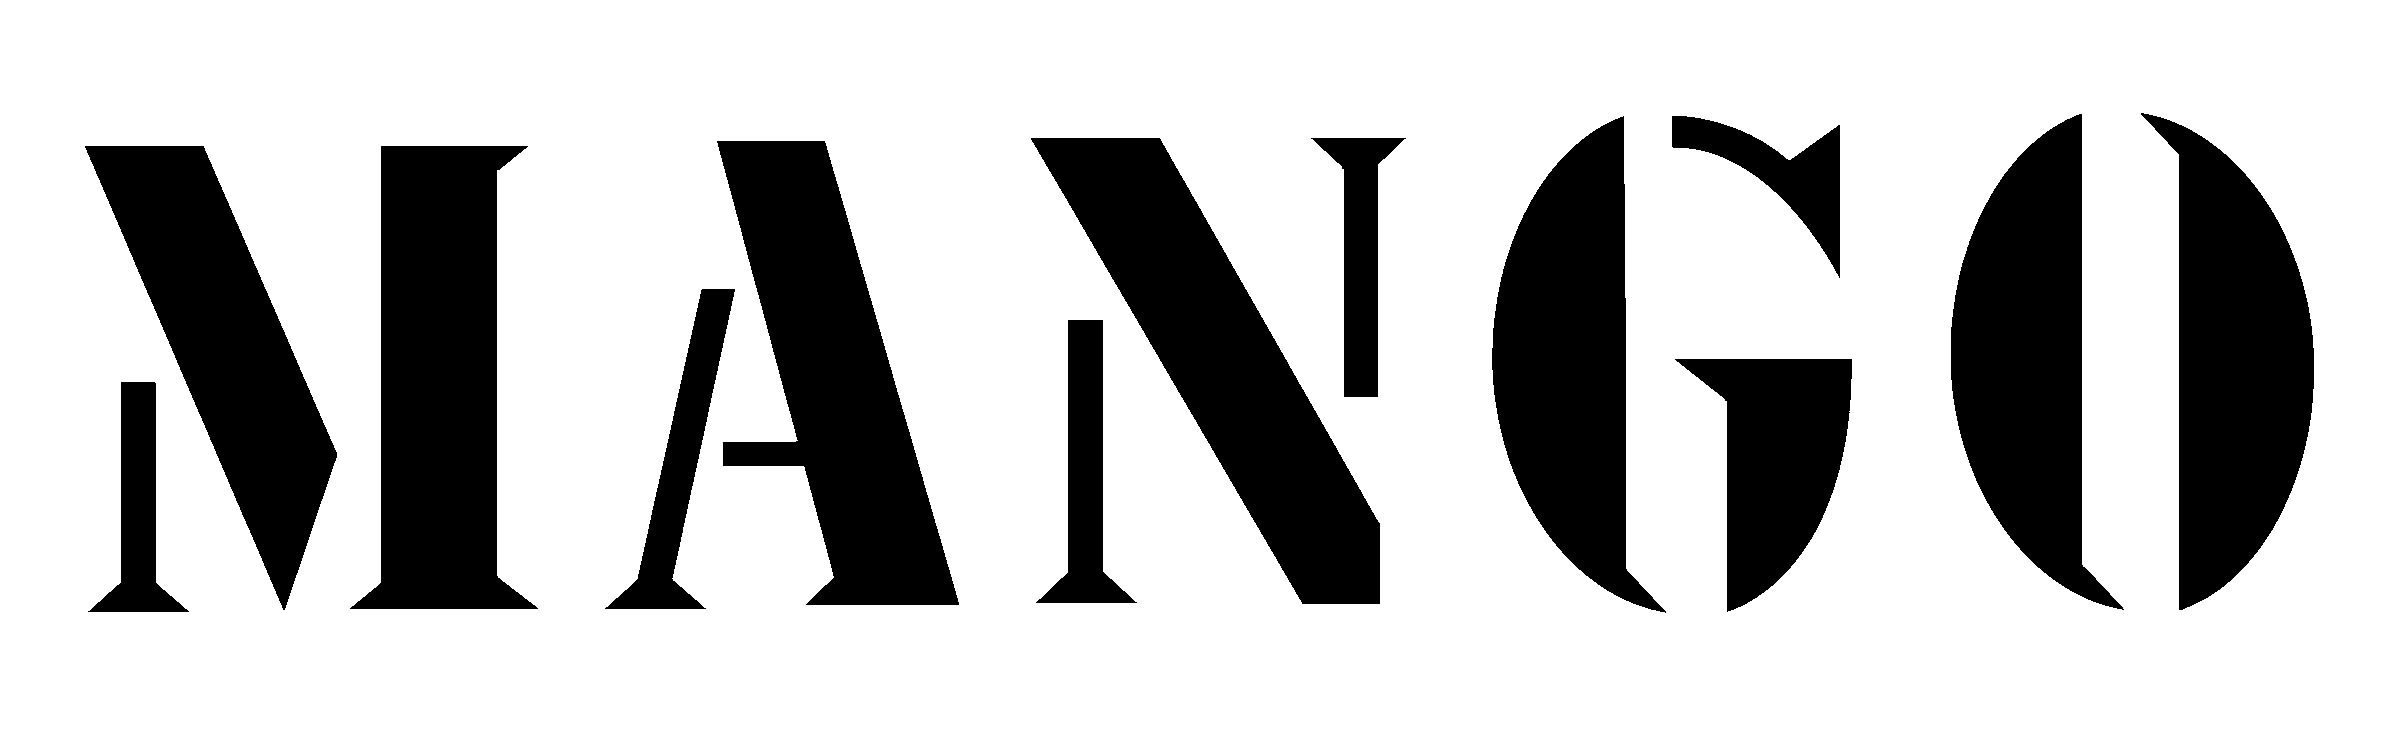 Nouveau logo pour la chaîne de mode espagnol MANGO